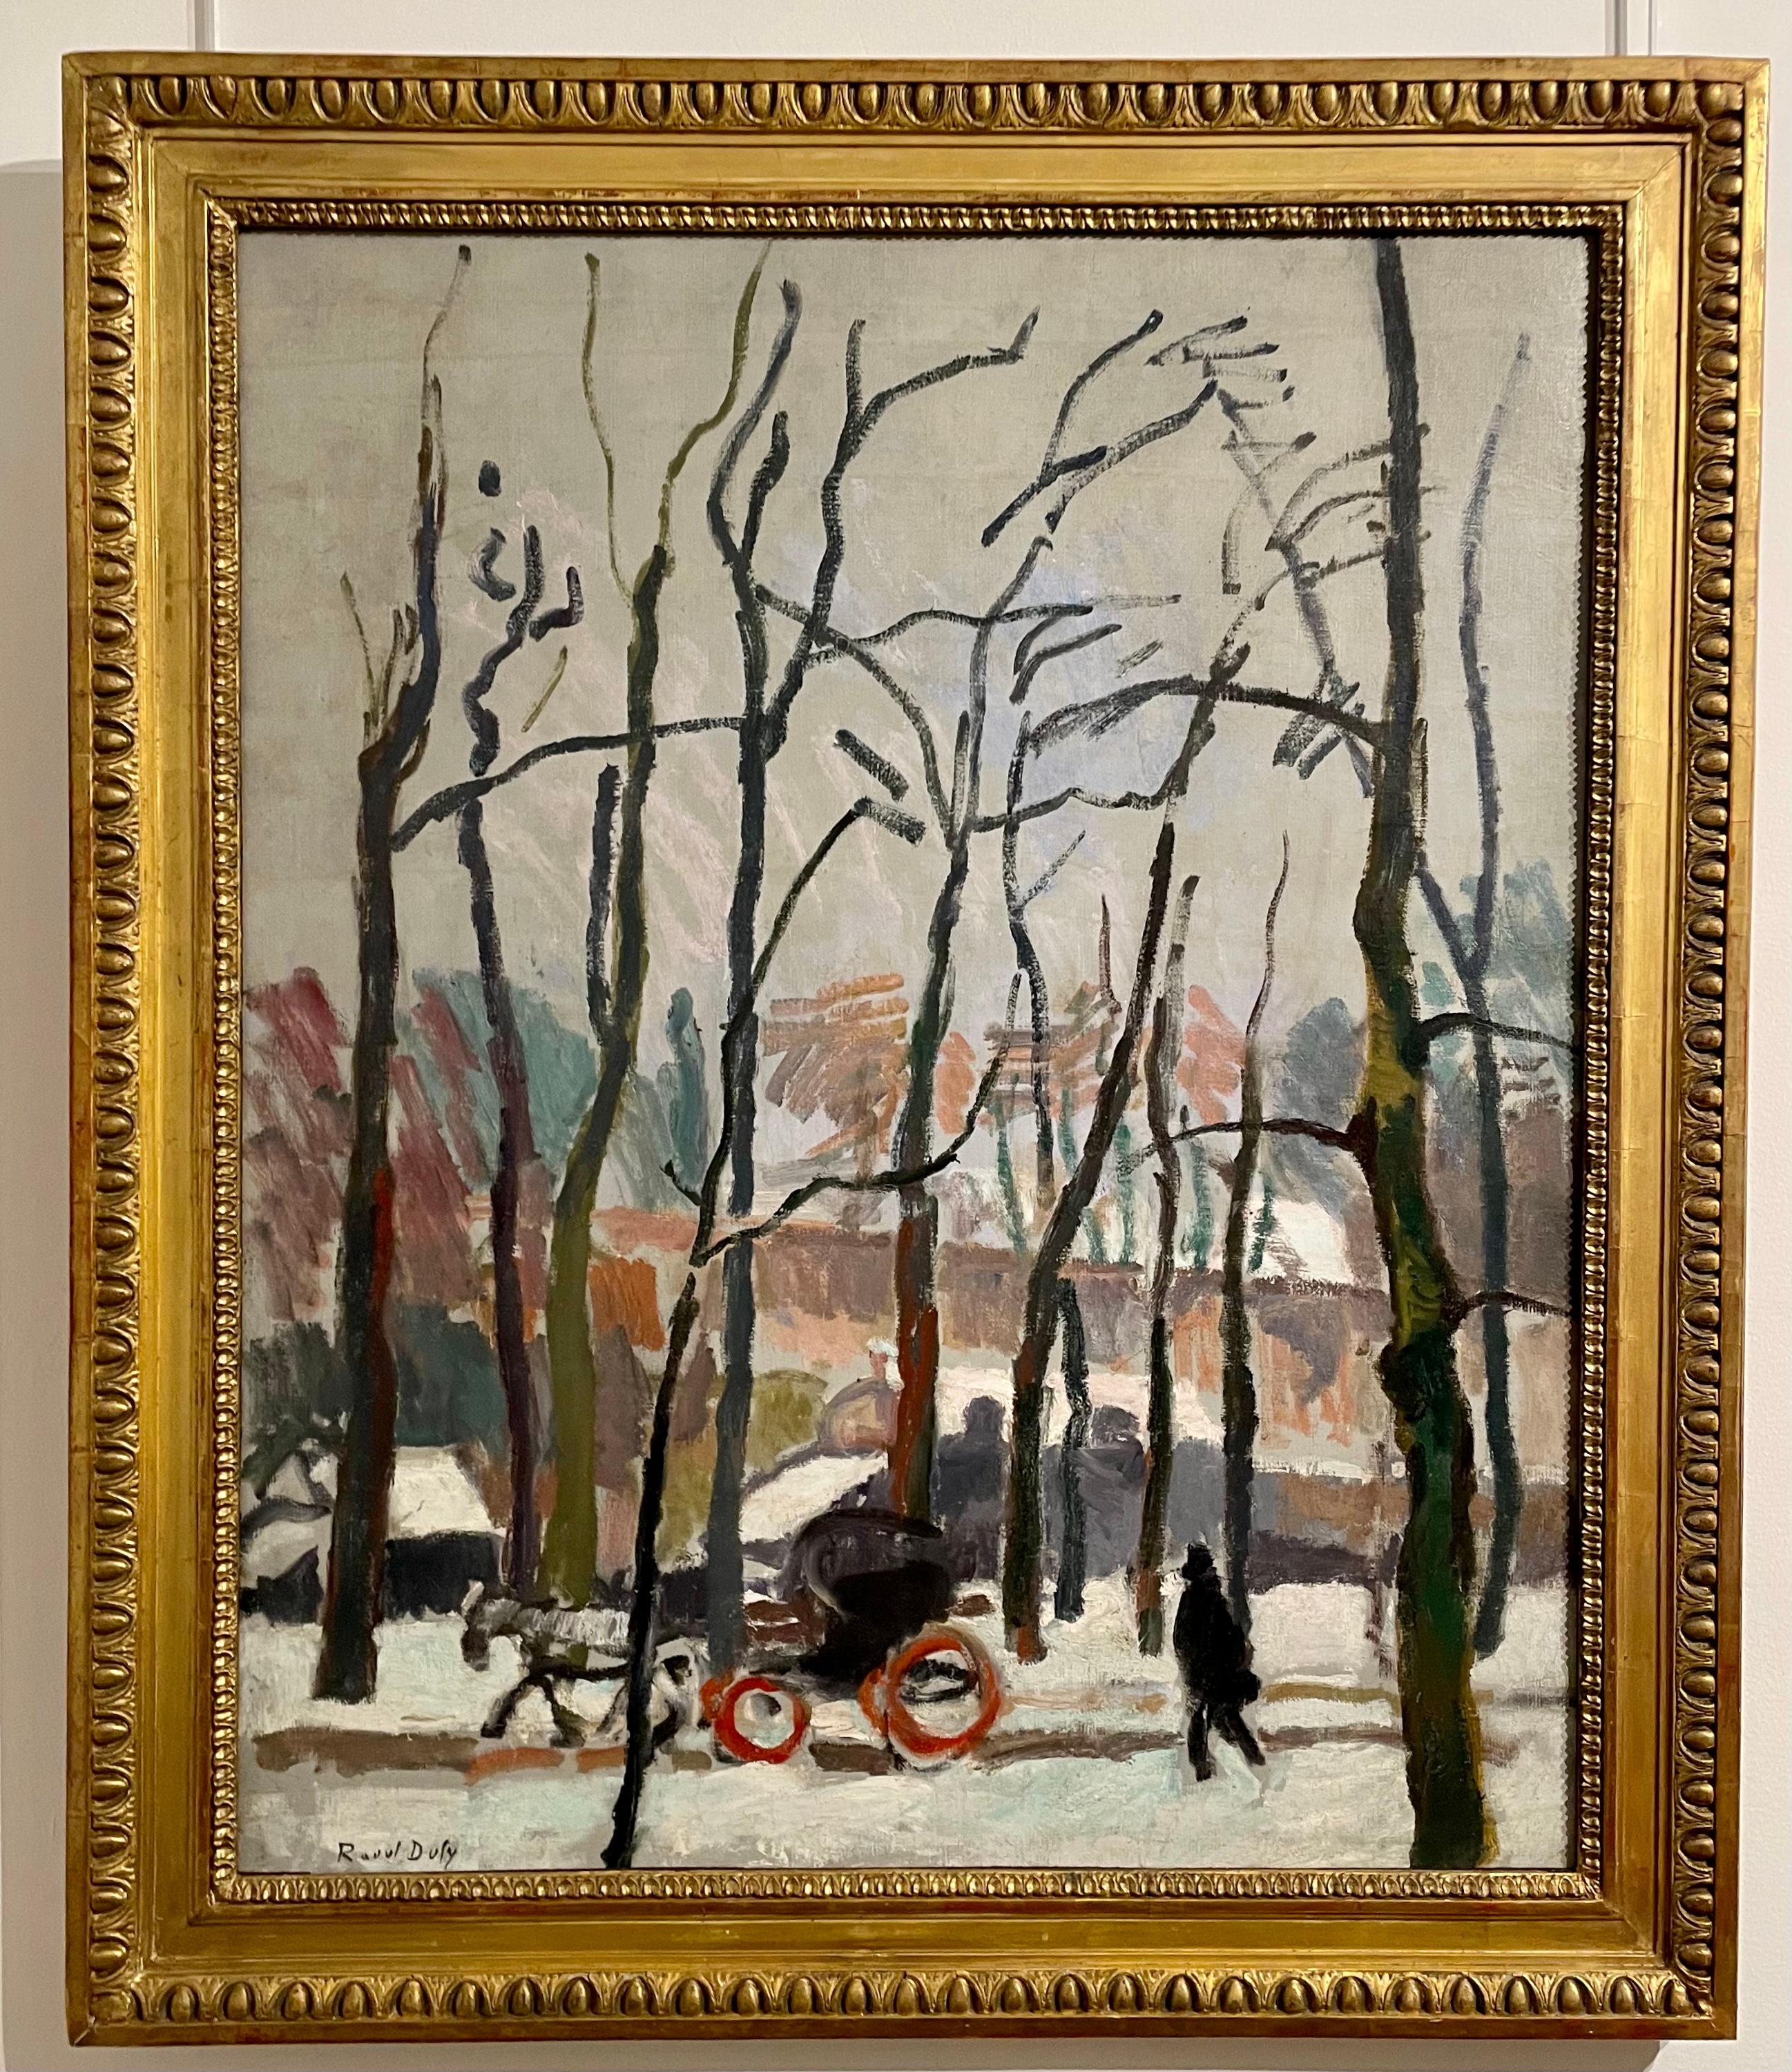 RAOUL DUFY
(LE HAVRE, 1877 - FORCALQUIER, 1953)
Calèche à Falaise
1905
Huile sur toile
78 x 64 cm.
Signé en bas à gauche
Certificat Fanny Guillon-Lagaille